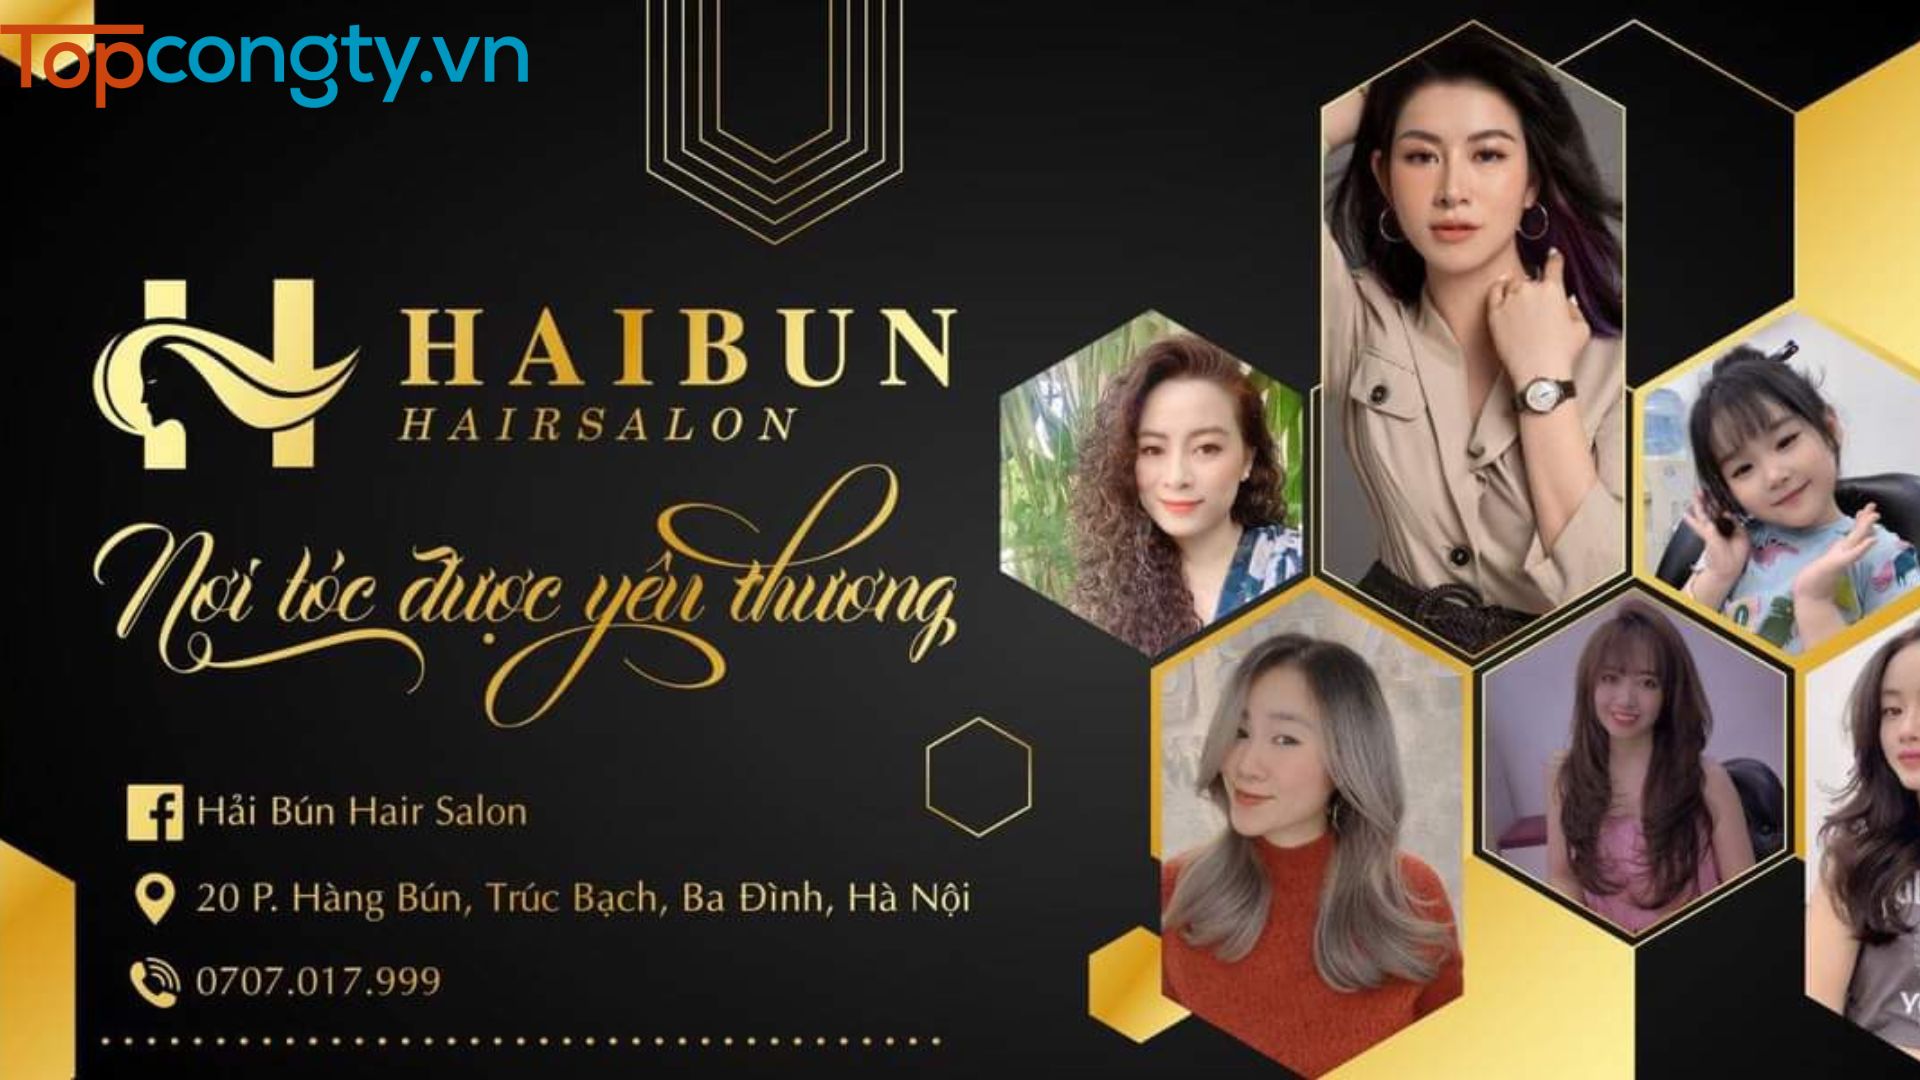 Hải Bún Hair Salon - Salon tóc đẹp và chất lượng ở Hà Nội